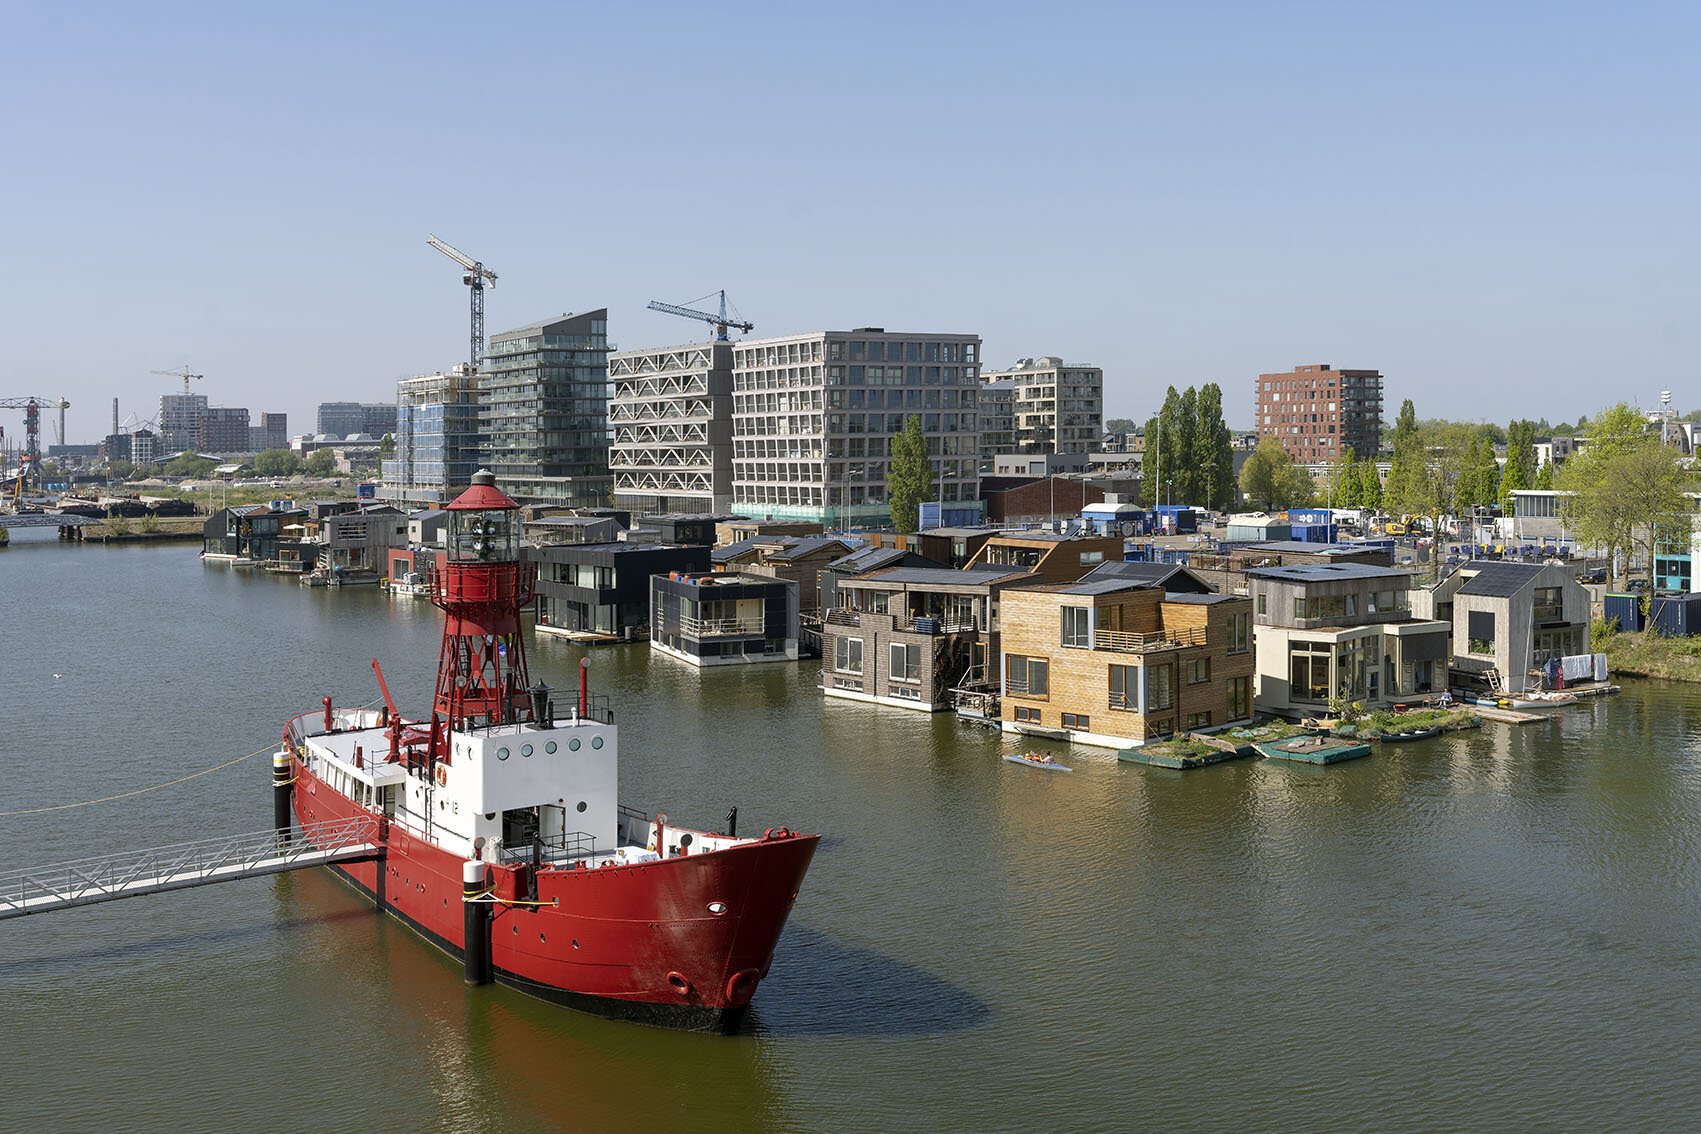 Schoonschip Amsterdam by Space&Matter